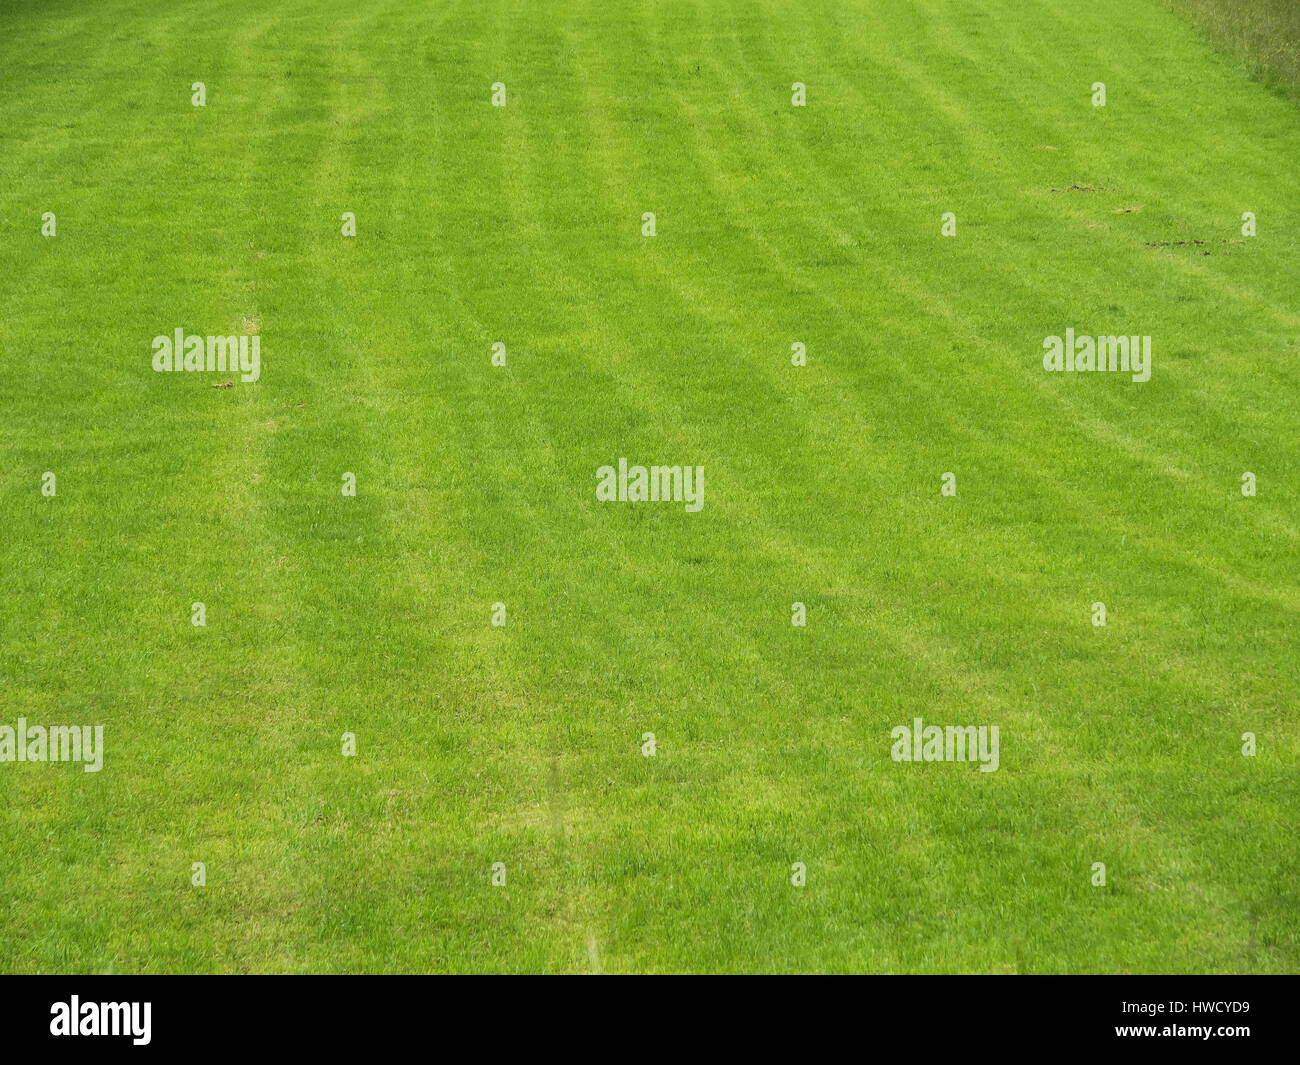 A green meadow with lay a track as a background, Eine grüne Wiese mit spuren als Hintergrund Stock Photo